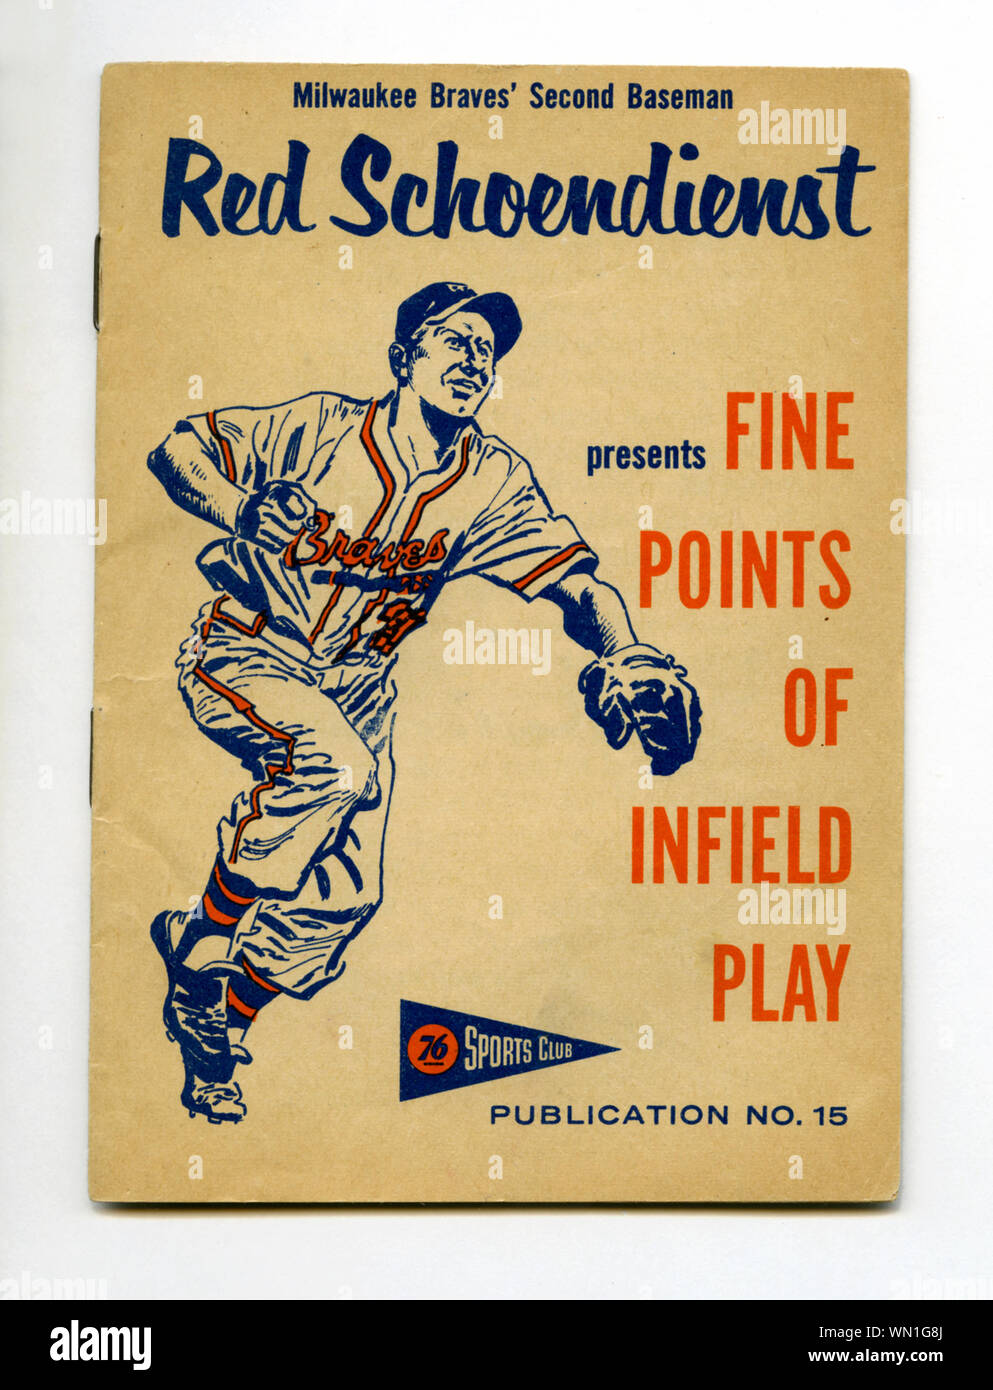 Vintage ära Souvenir-heft 60er mit Milwaukee Braves star Baseball player Rot Schoendienst Tipps zu Infield spielen, wurde an 76 Tankstellen. Stockfoto